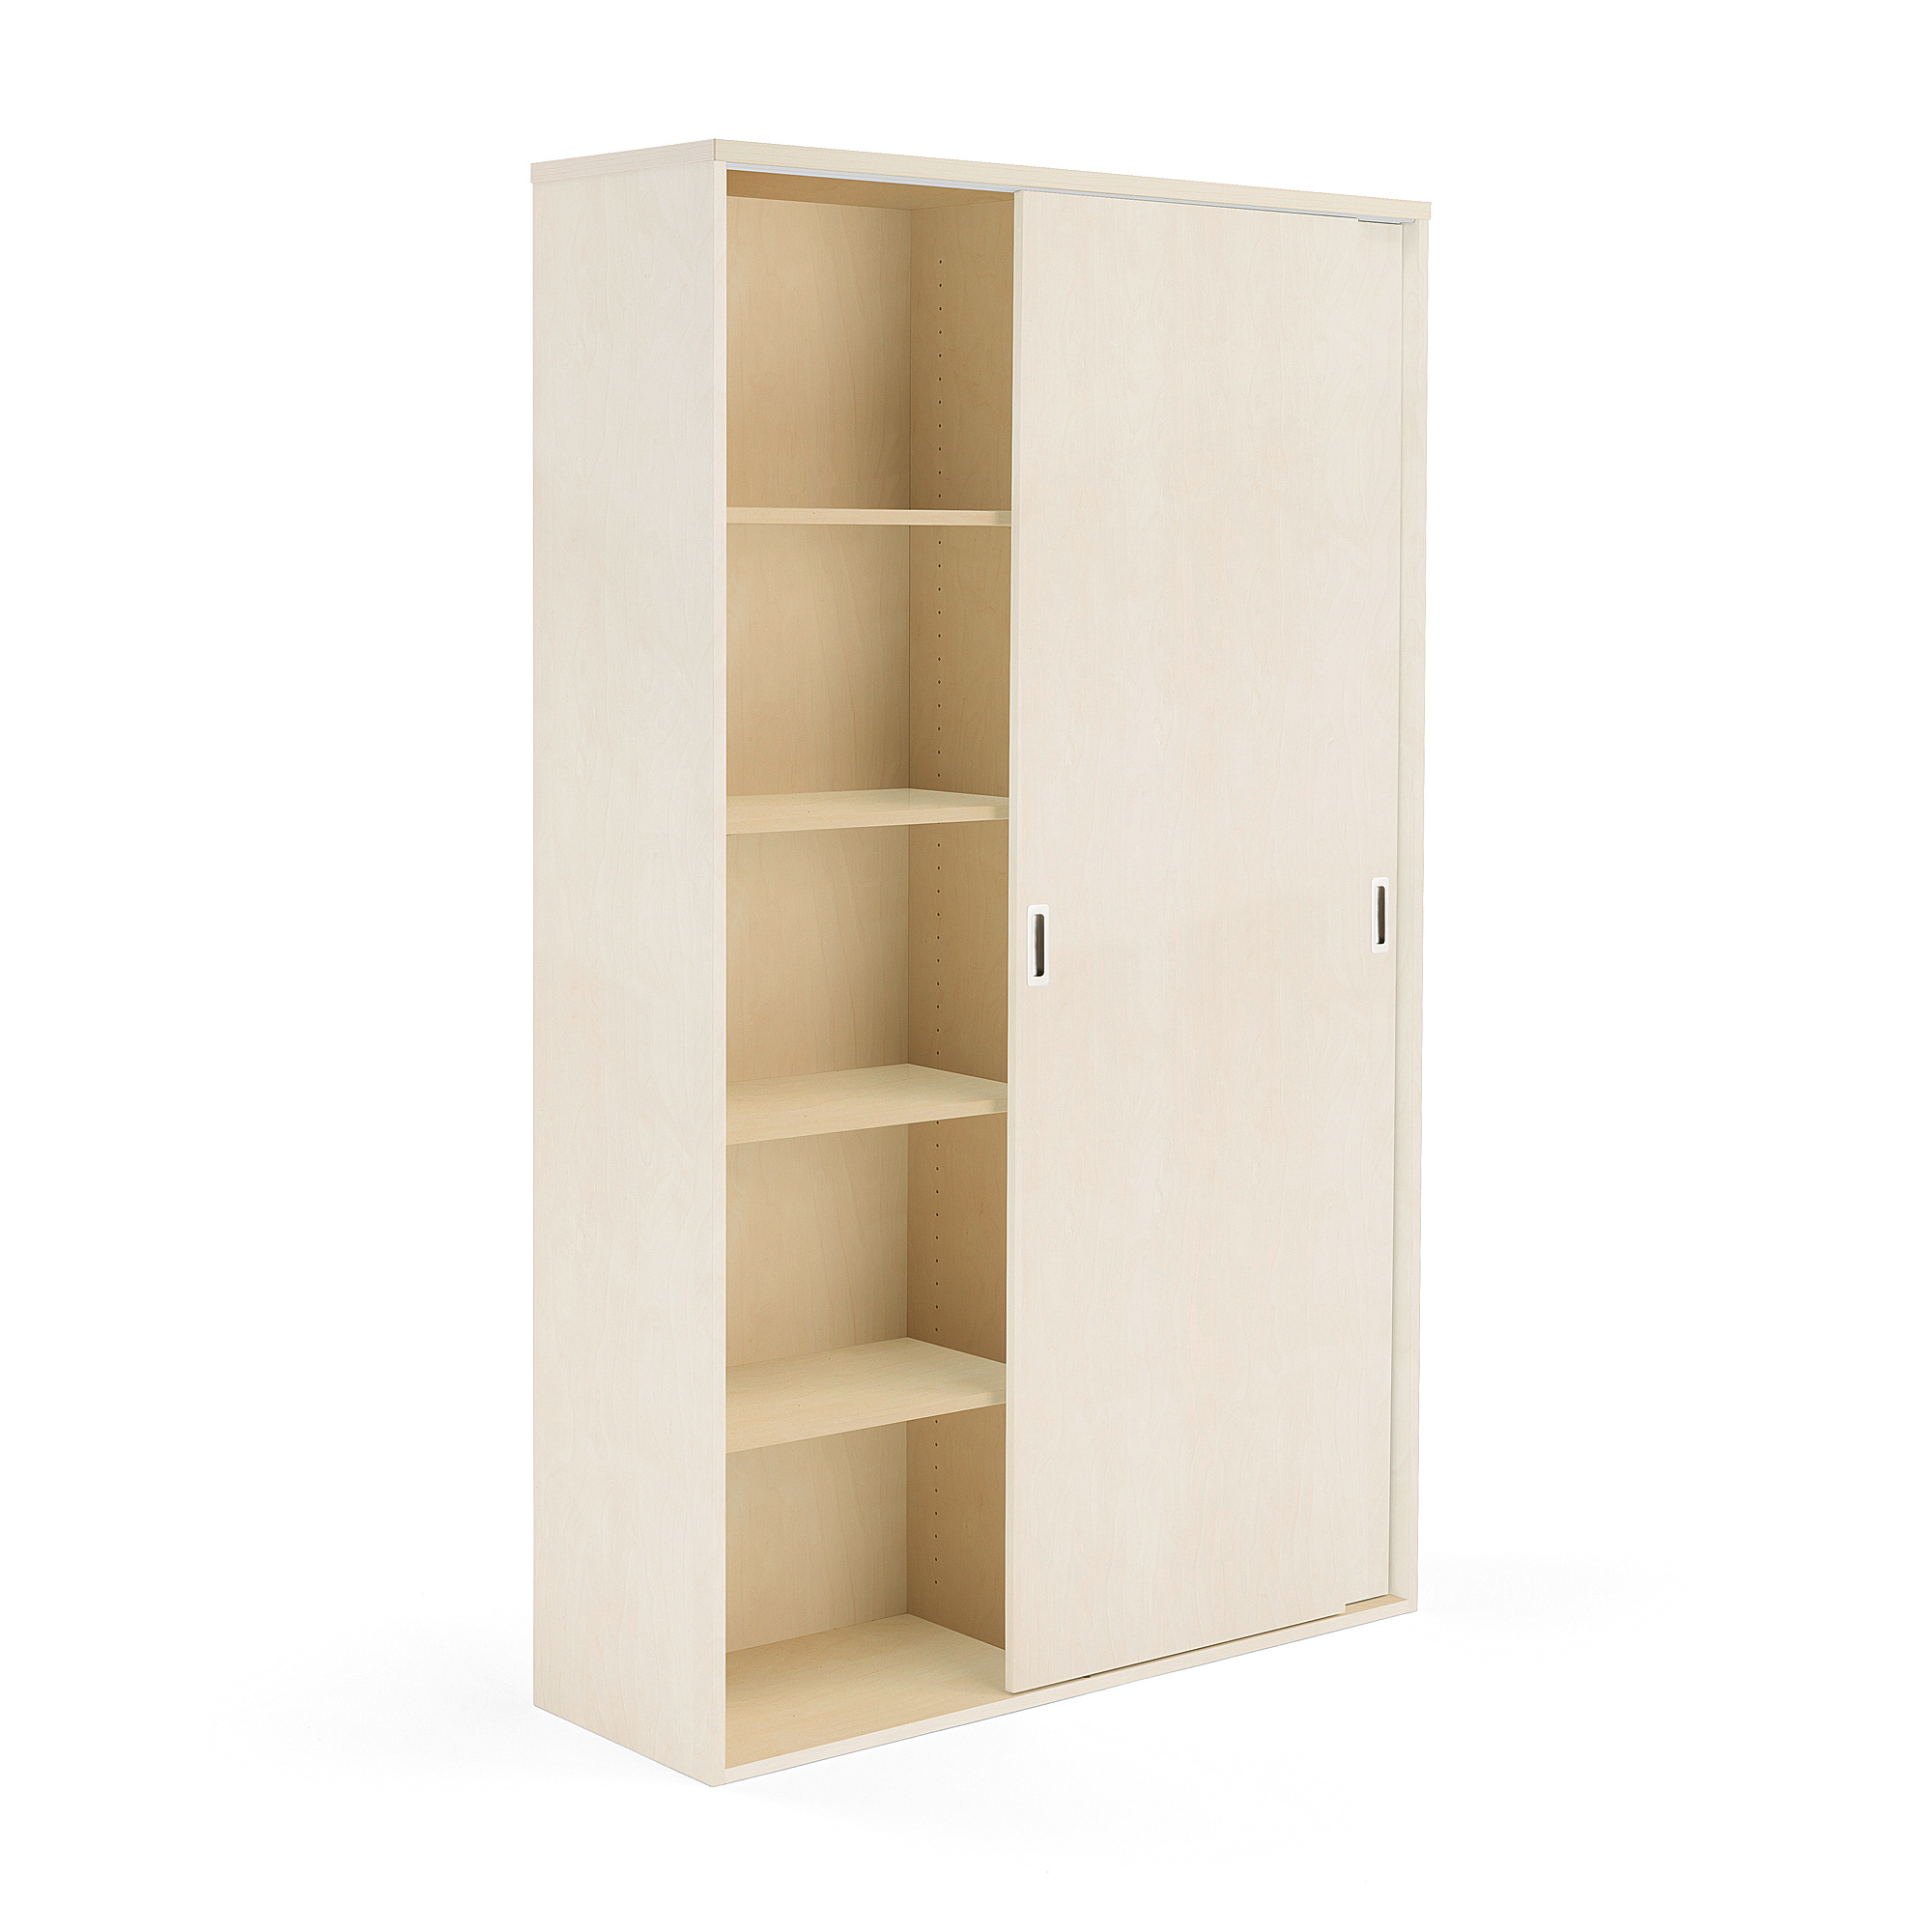 Kancelárska skriňa s posuvnými dverami MODULUS XL, 2000x1200 mm, breza